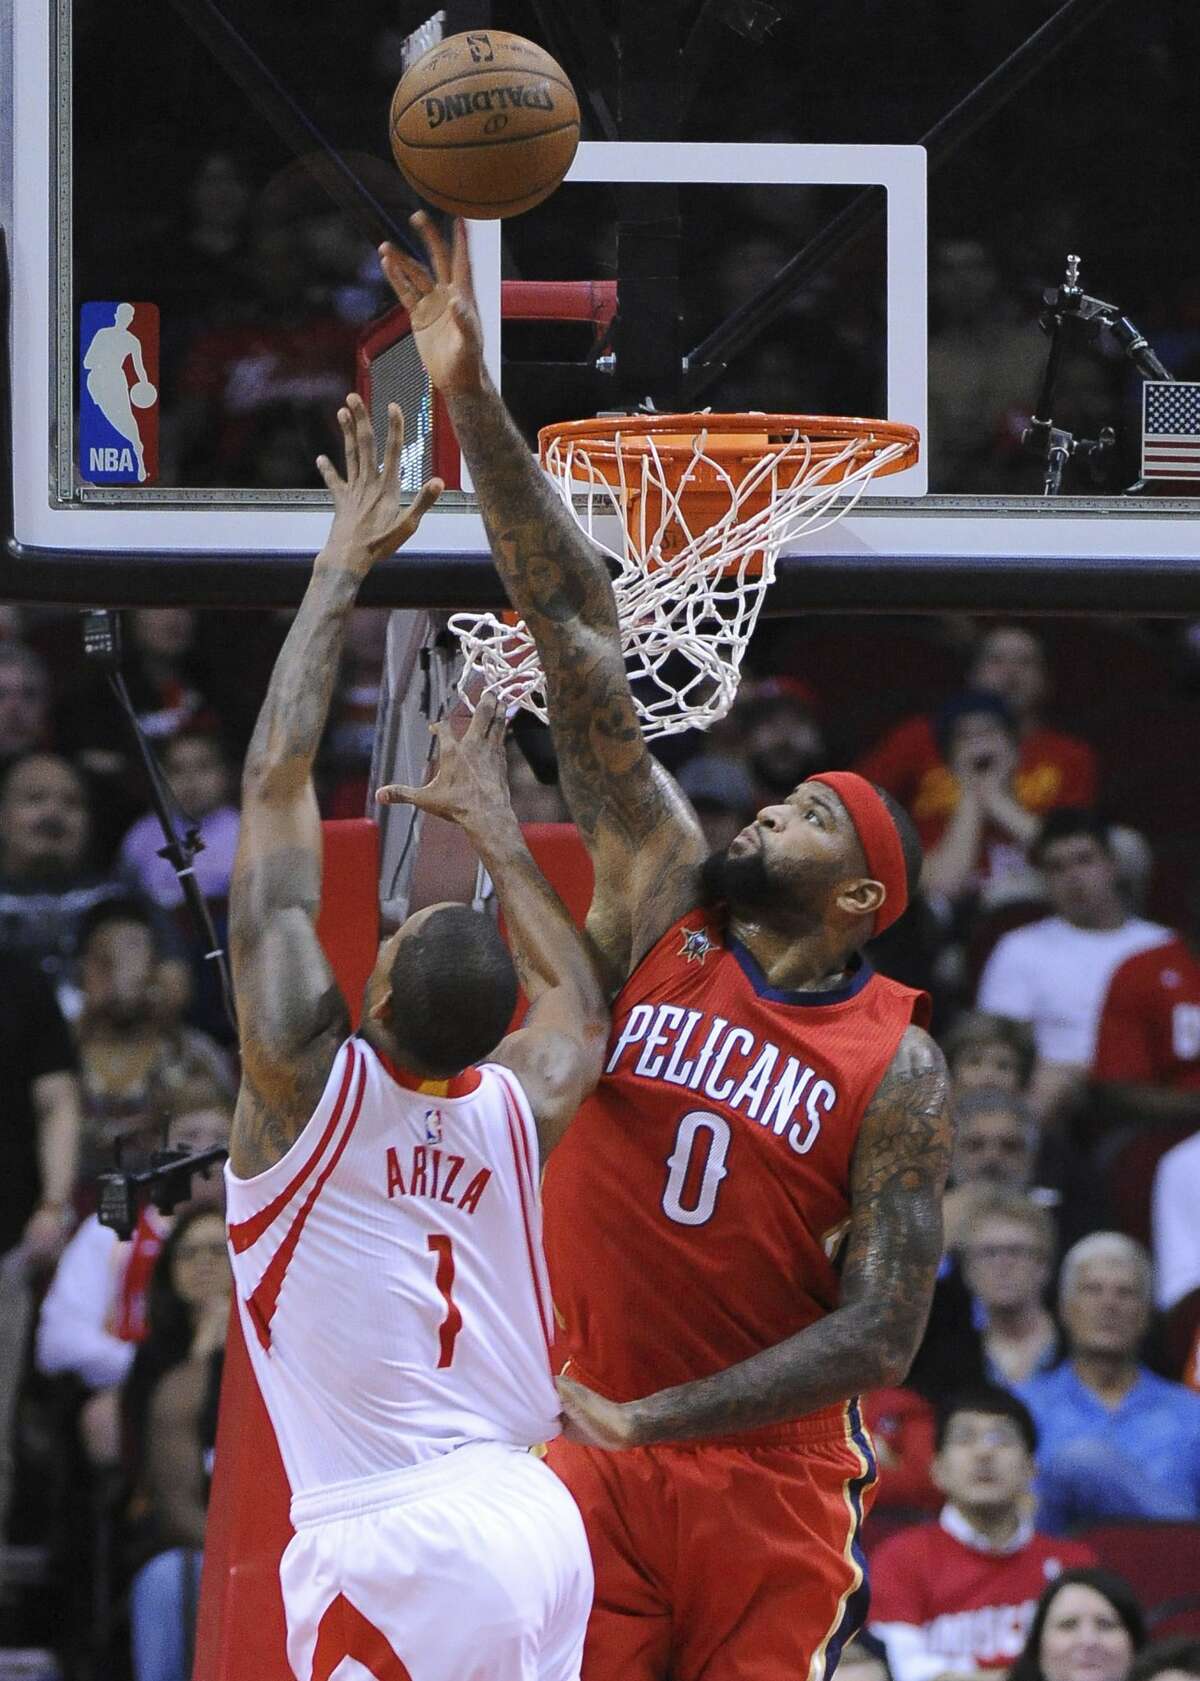 Preview: Rockets vs. Pelicans